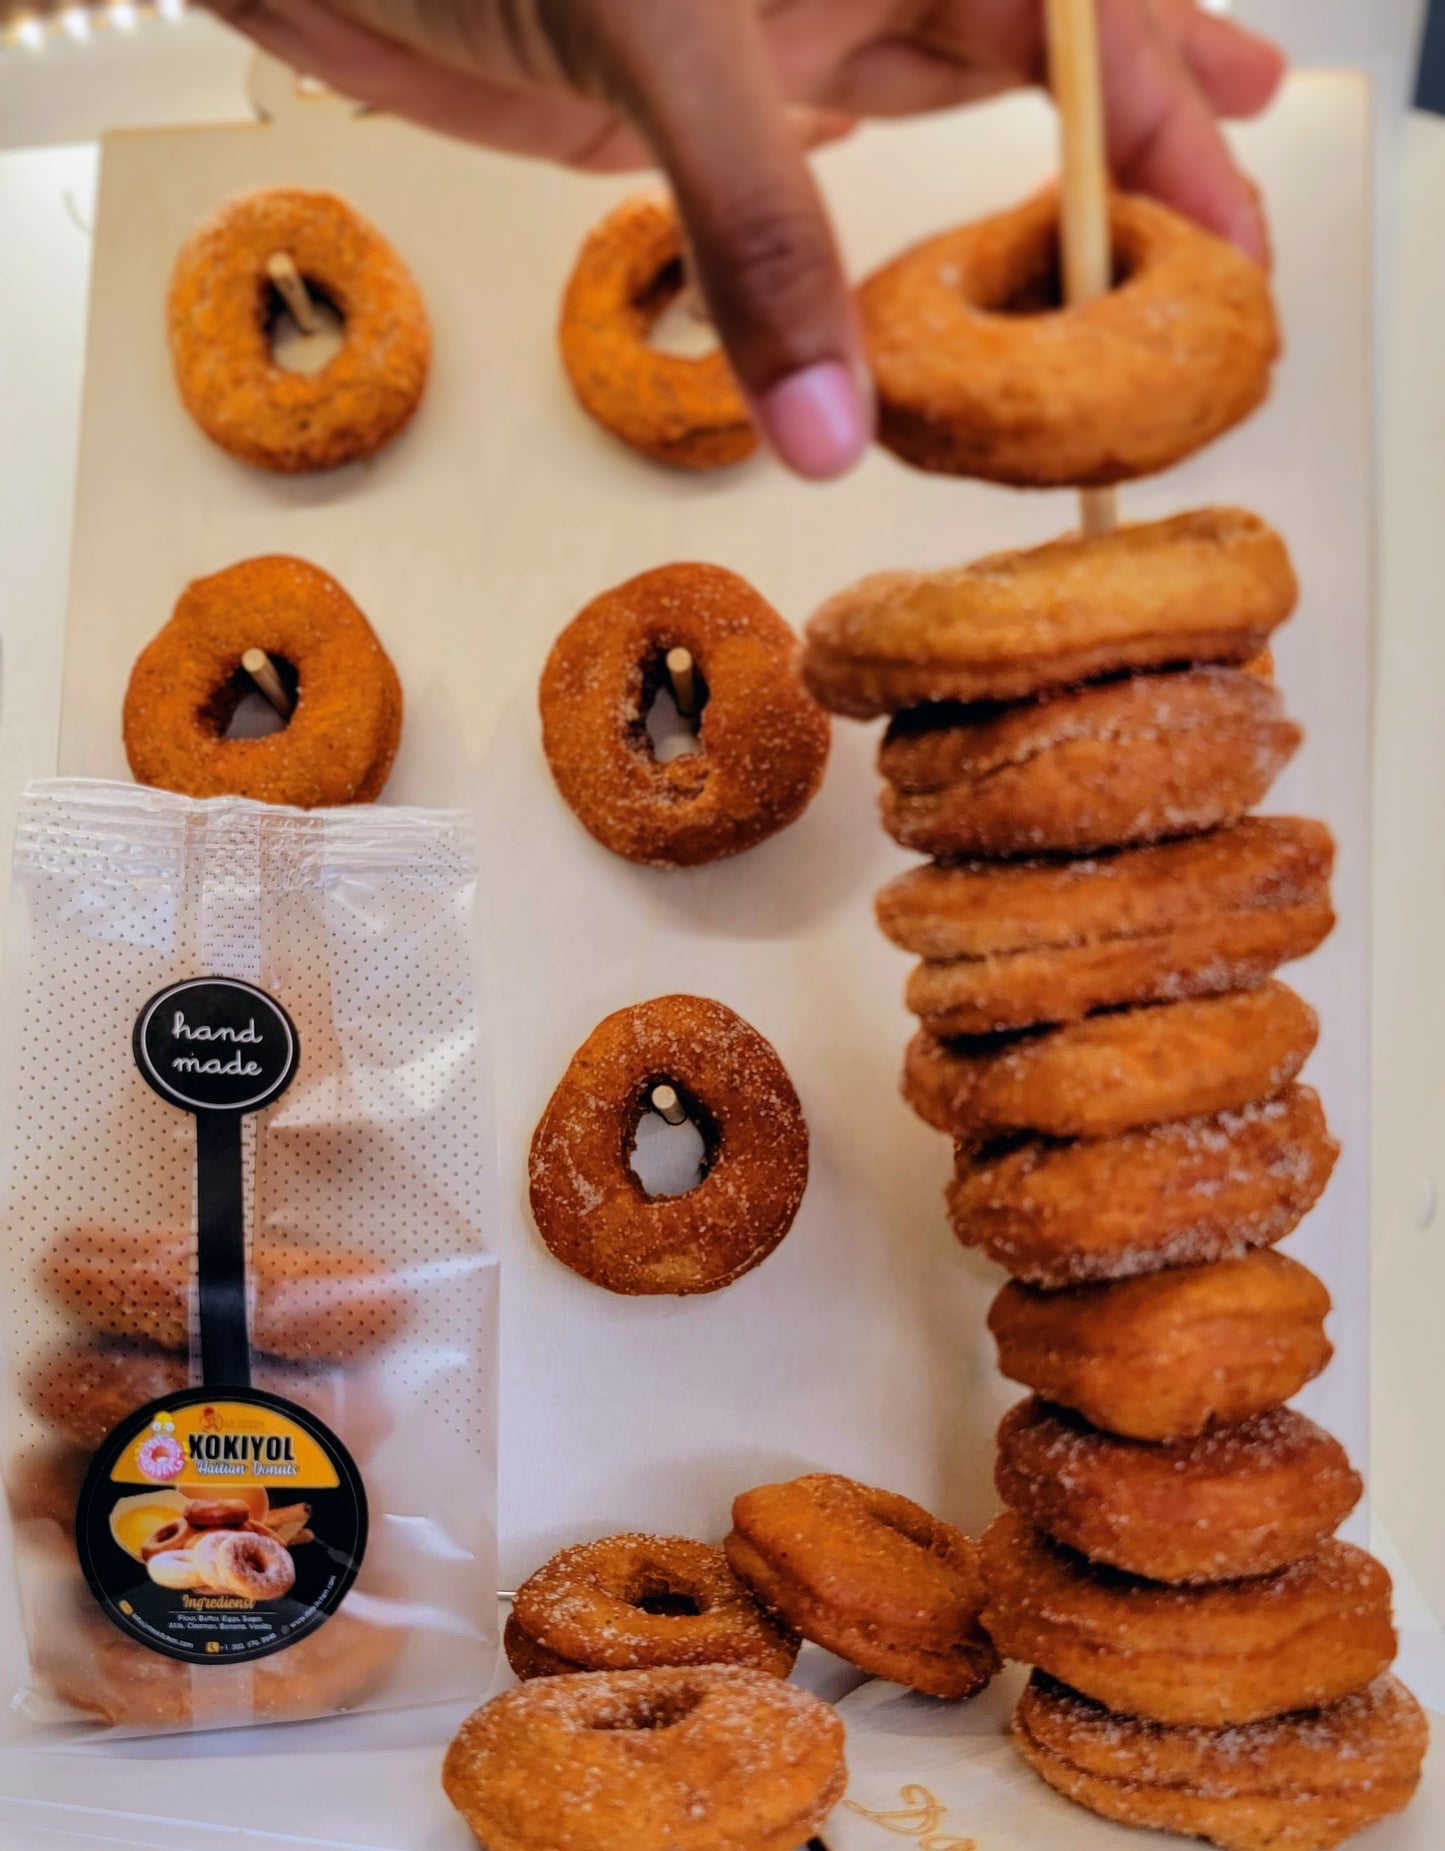 kokiyol (haitian Donuts)